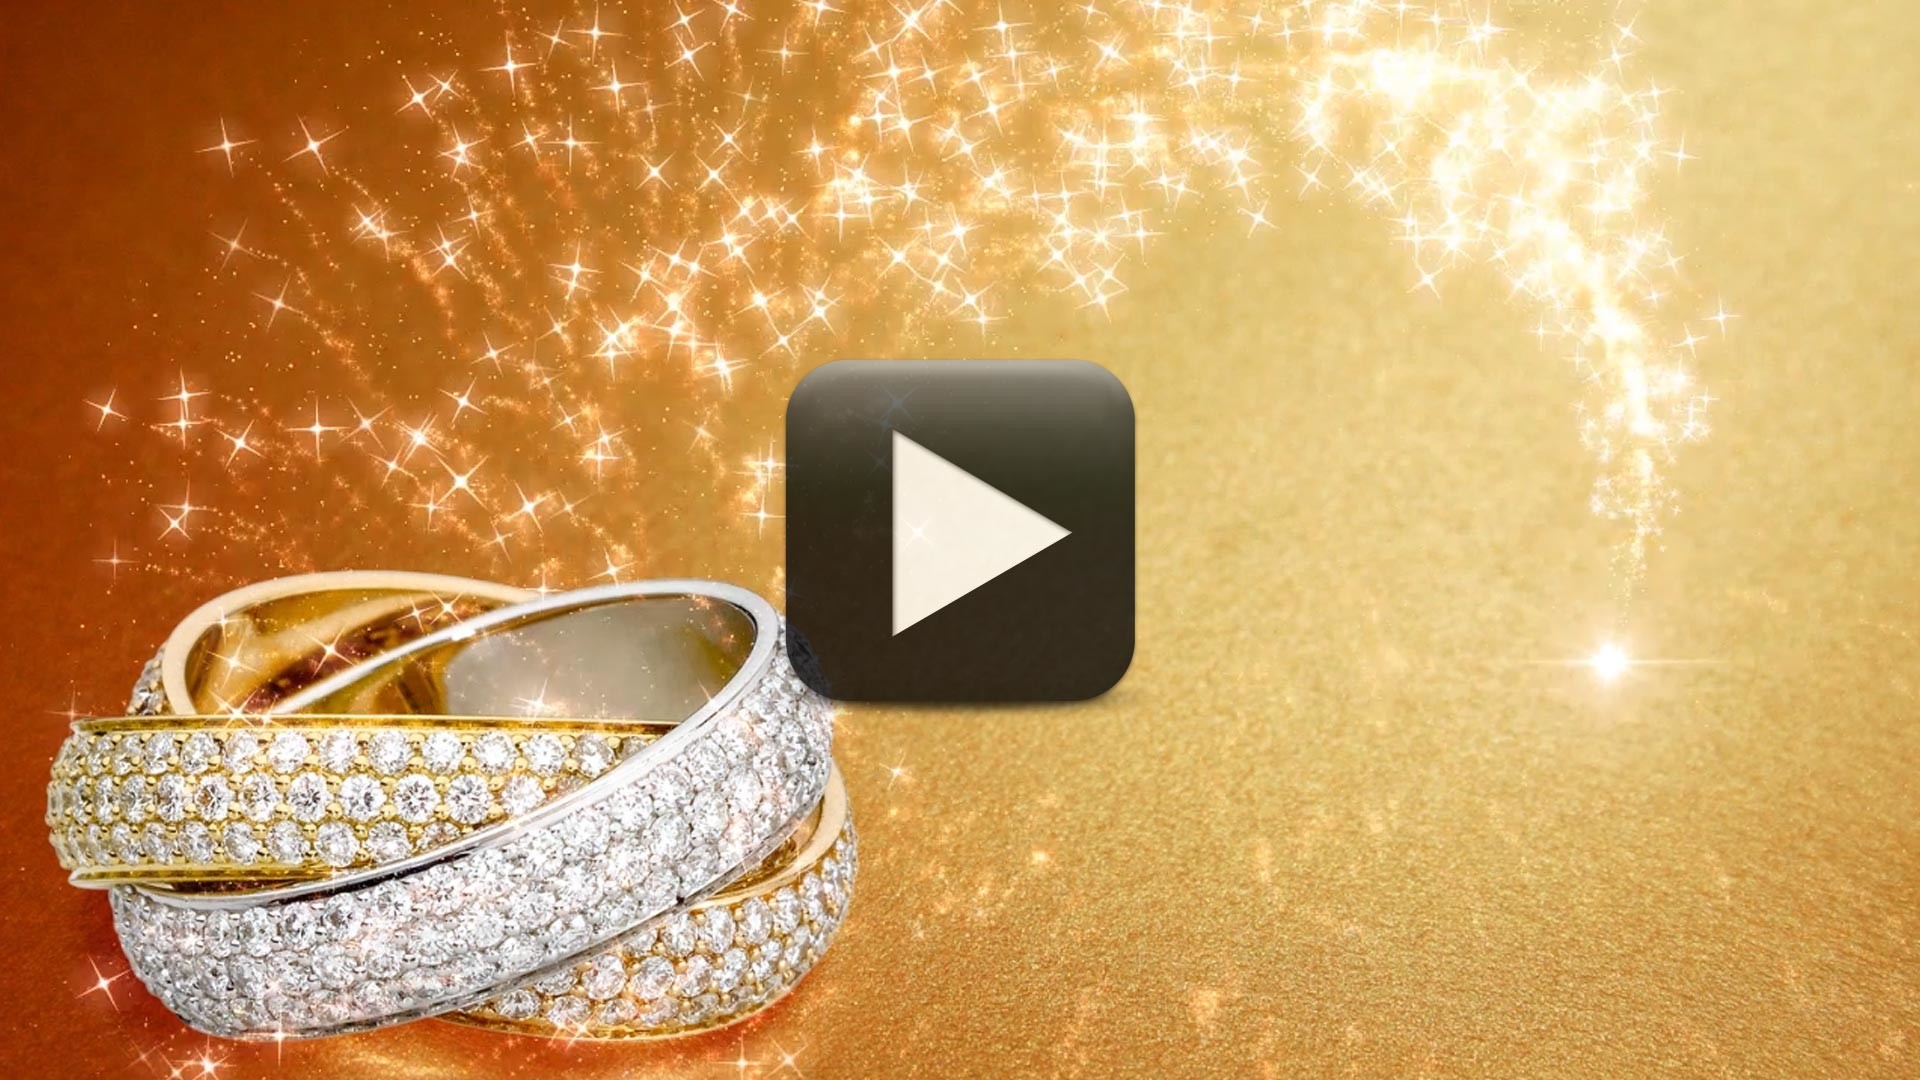 웨딩 벽지 다운로드,노랑,반지,약혼 반지,금,결혼 반지